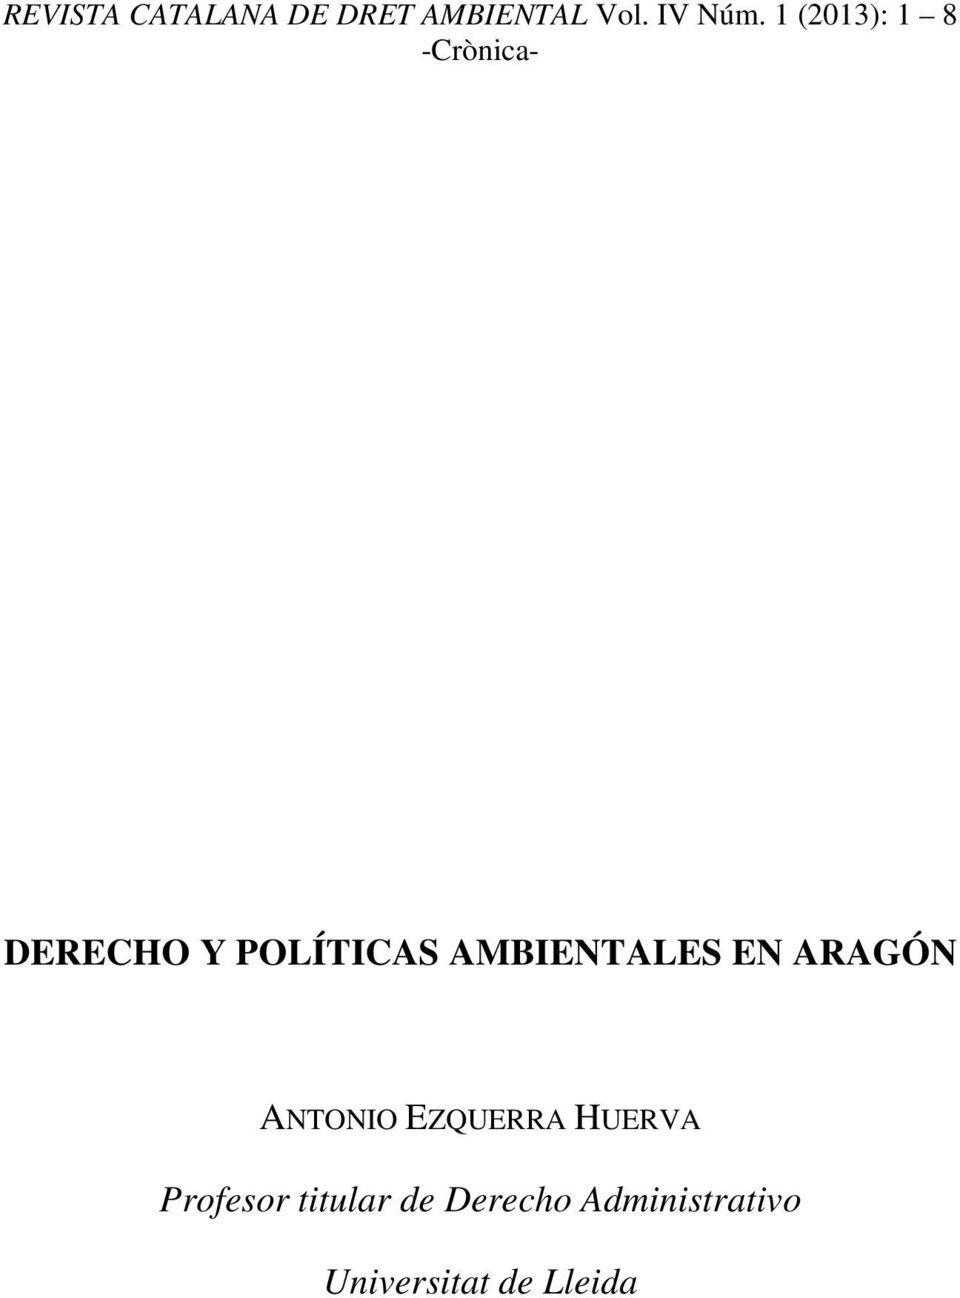 AMBIENTALES EN ARAGÓN ANTONIO EZQUERRA HUERVA